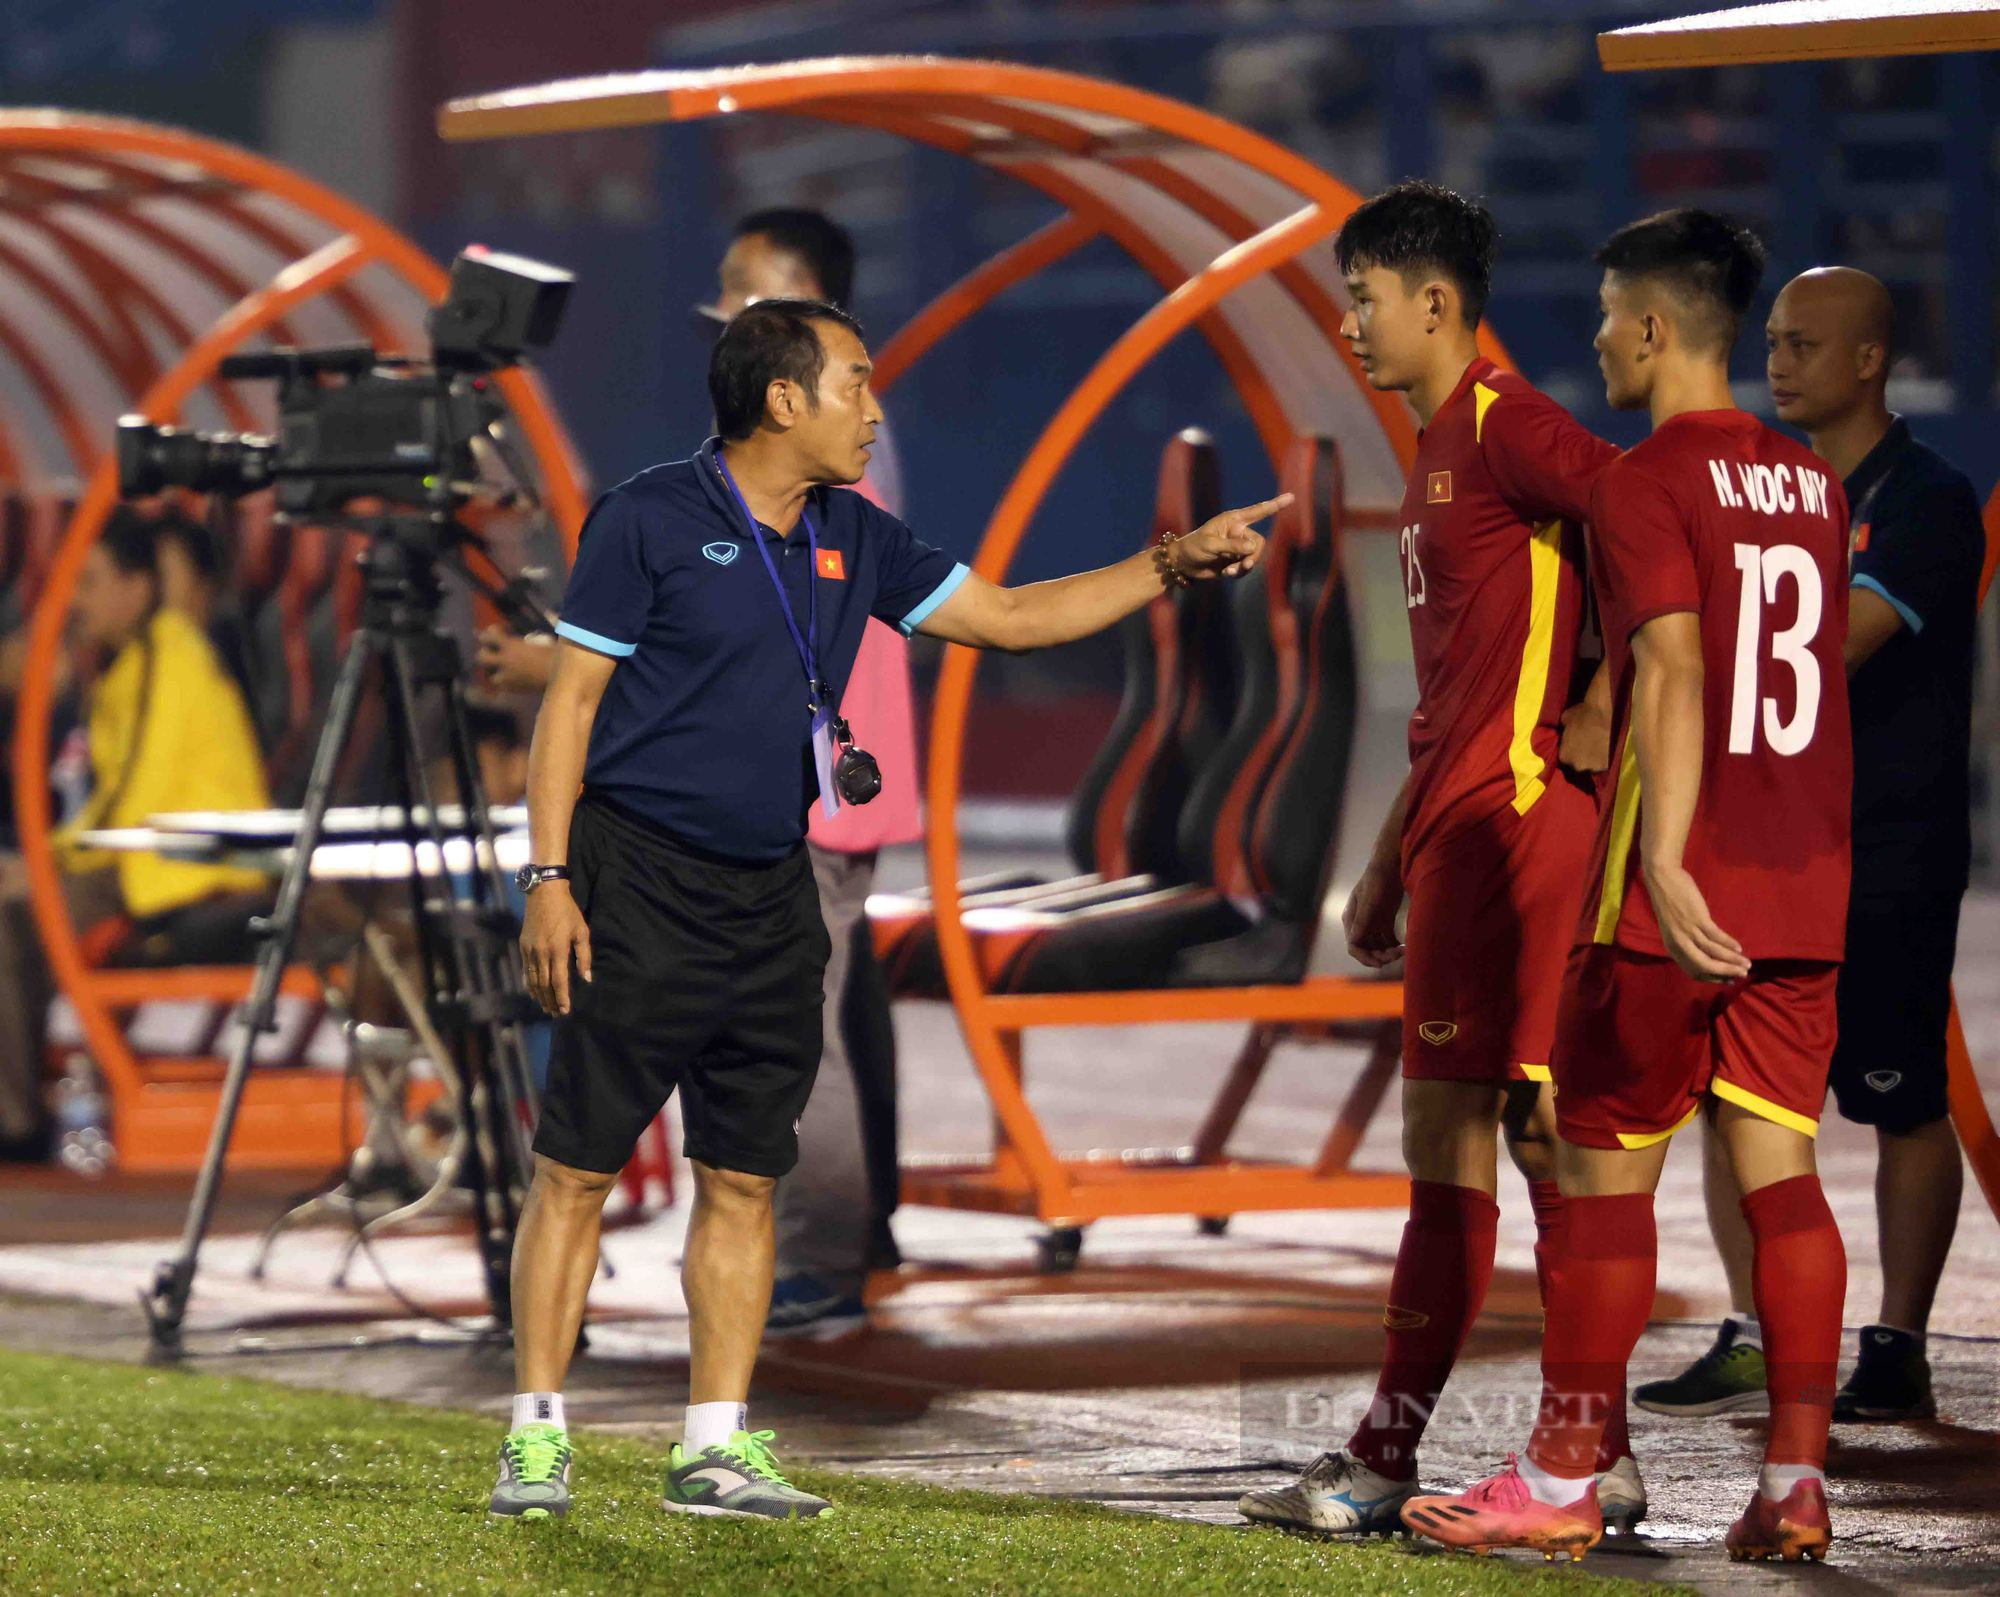 Đánh bại Malaysia trên chấm luân lưu, U19 Việt Nam vô địch Giải U19 Quốc tế - Ảnh 6.